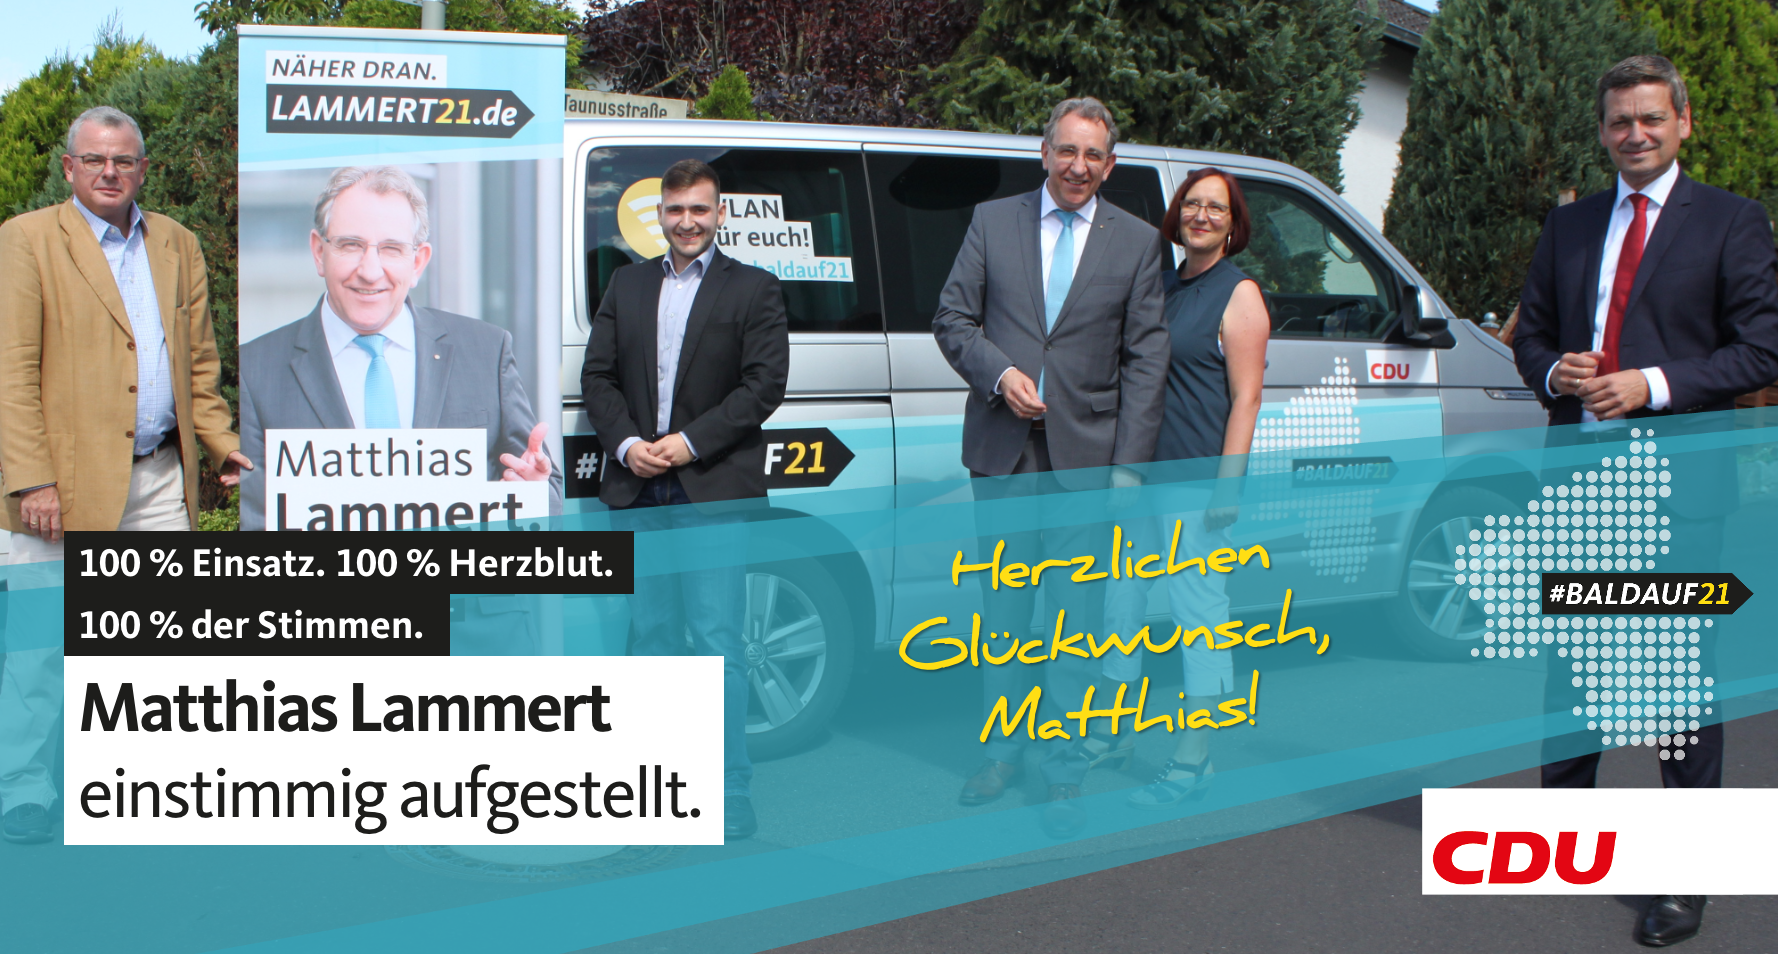 Matthias Lammert einstimmig als Kandidat für Landtagswahl aufgestellt: Spitzenkandidat Christian Baldauf besucht langjährigen Landtagsfreund zum CDU-Wahlkampfau